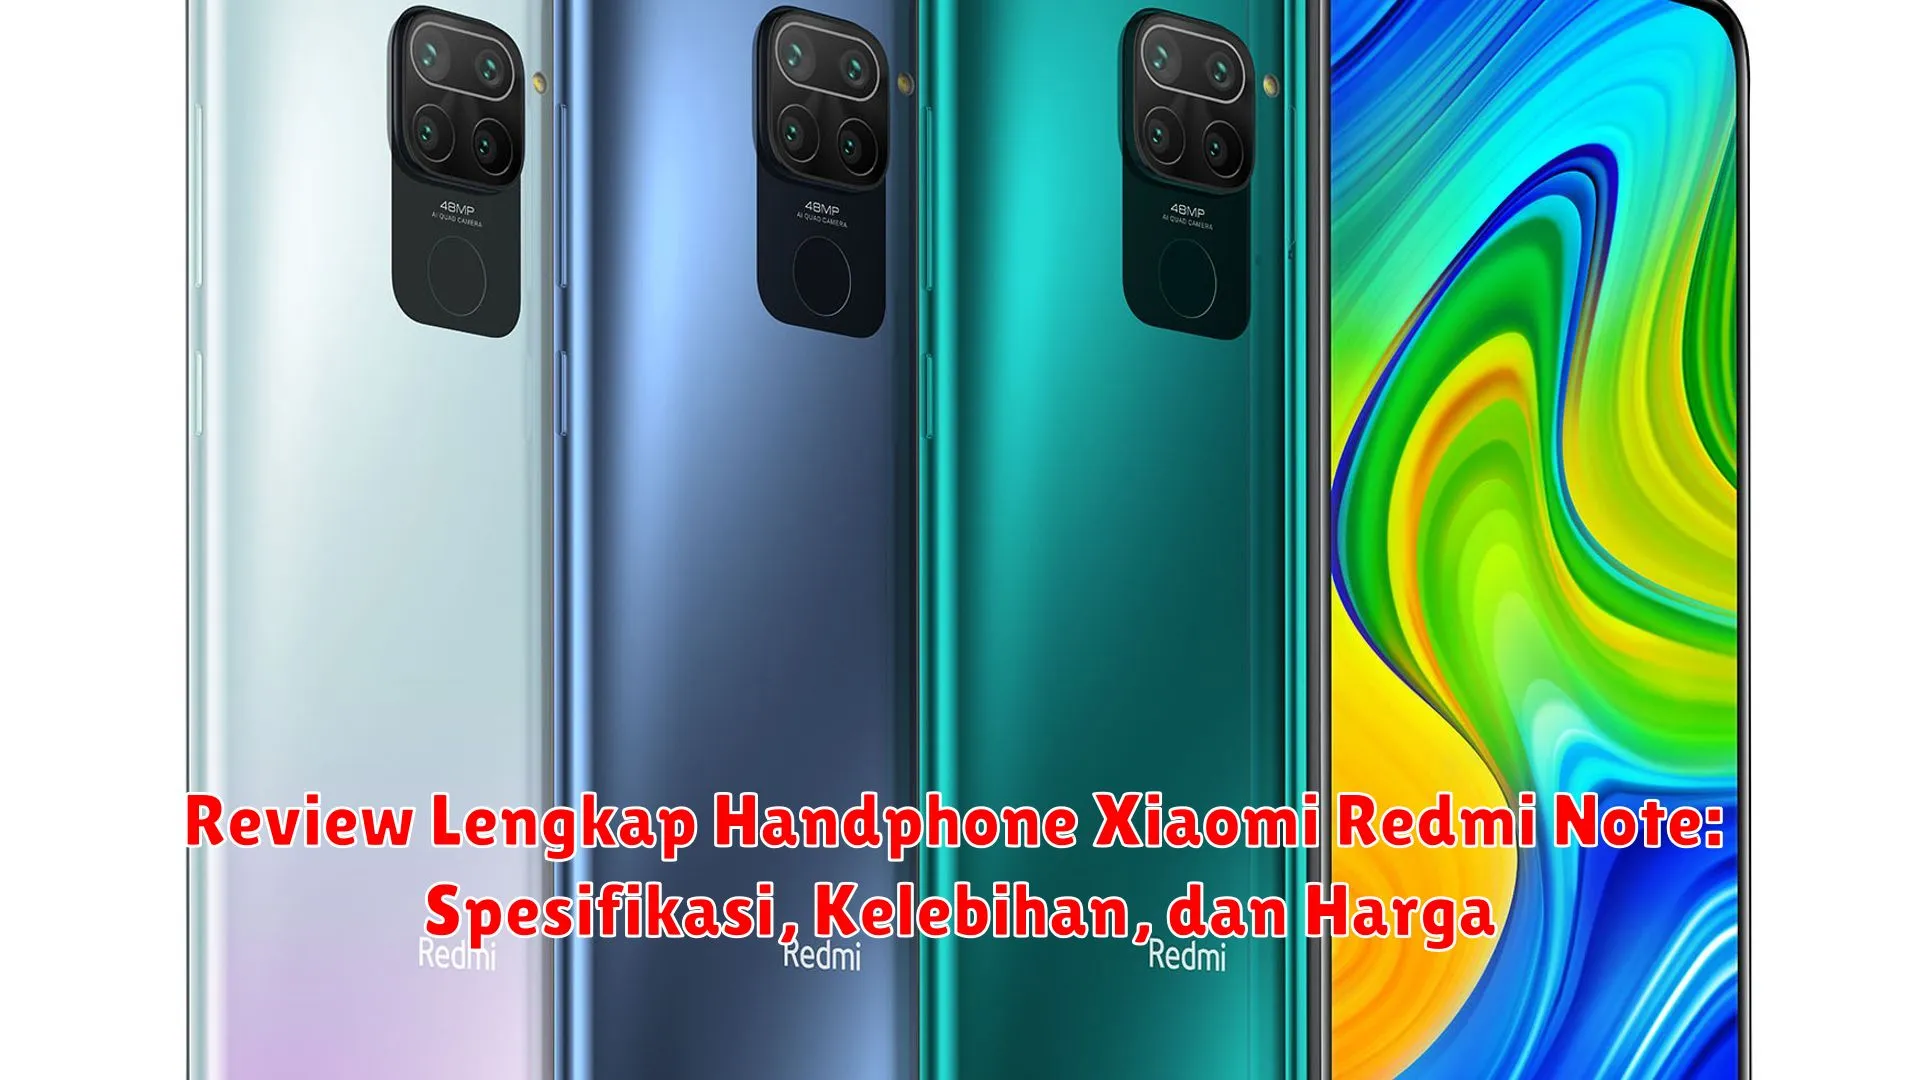 Review Lengkap Handphone Xiaomi Redmi Note: Spesifikasi, Kelebihan, dan Harga